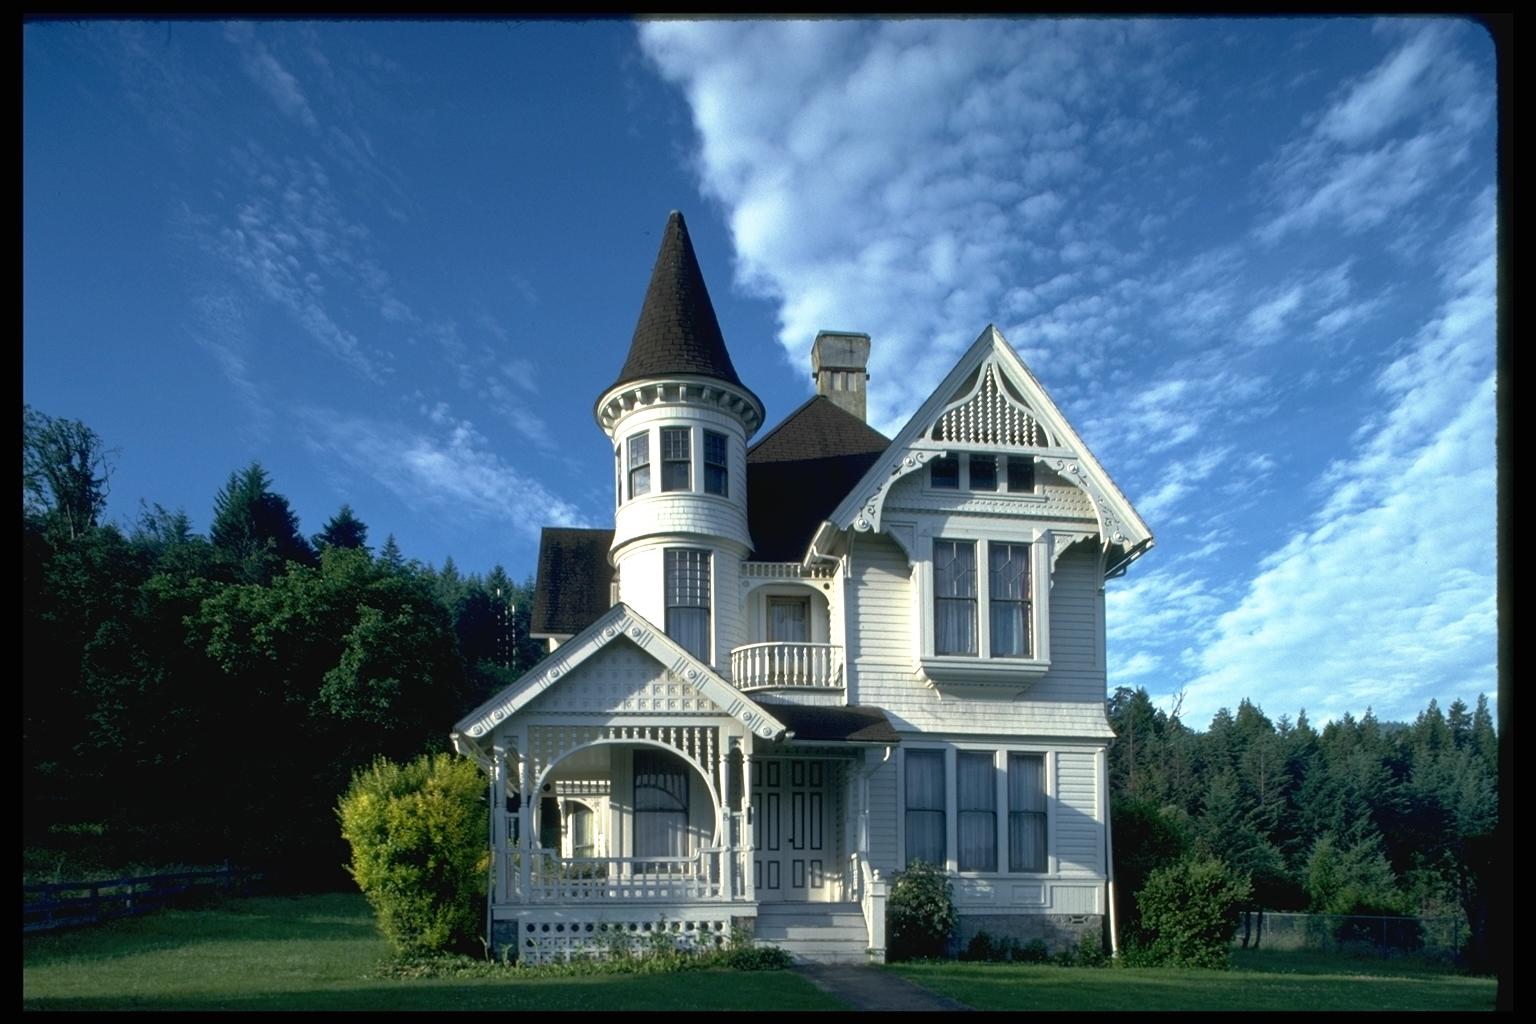 Така дом. Особняк в стиле Ампир с башенками. Коттедж с башенкой в викторианском стиле. Красивый домик. Красивые коттеджи.